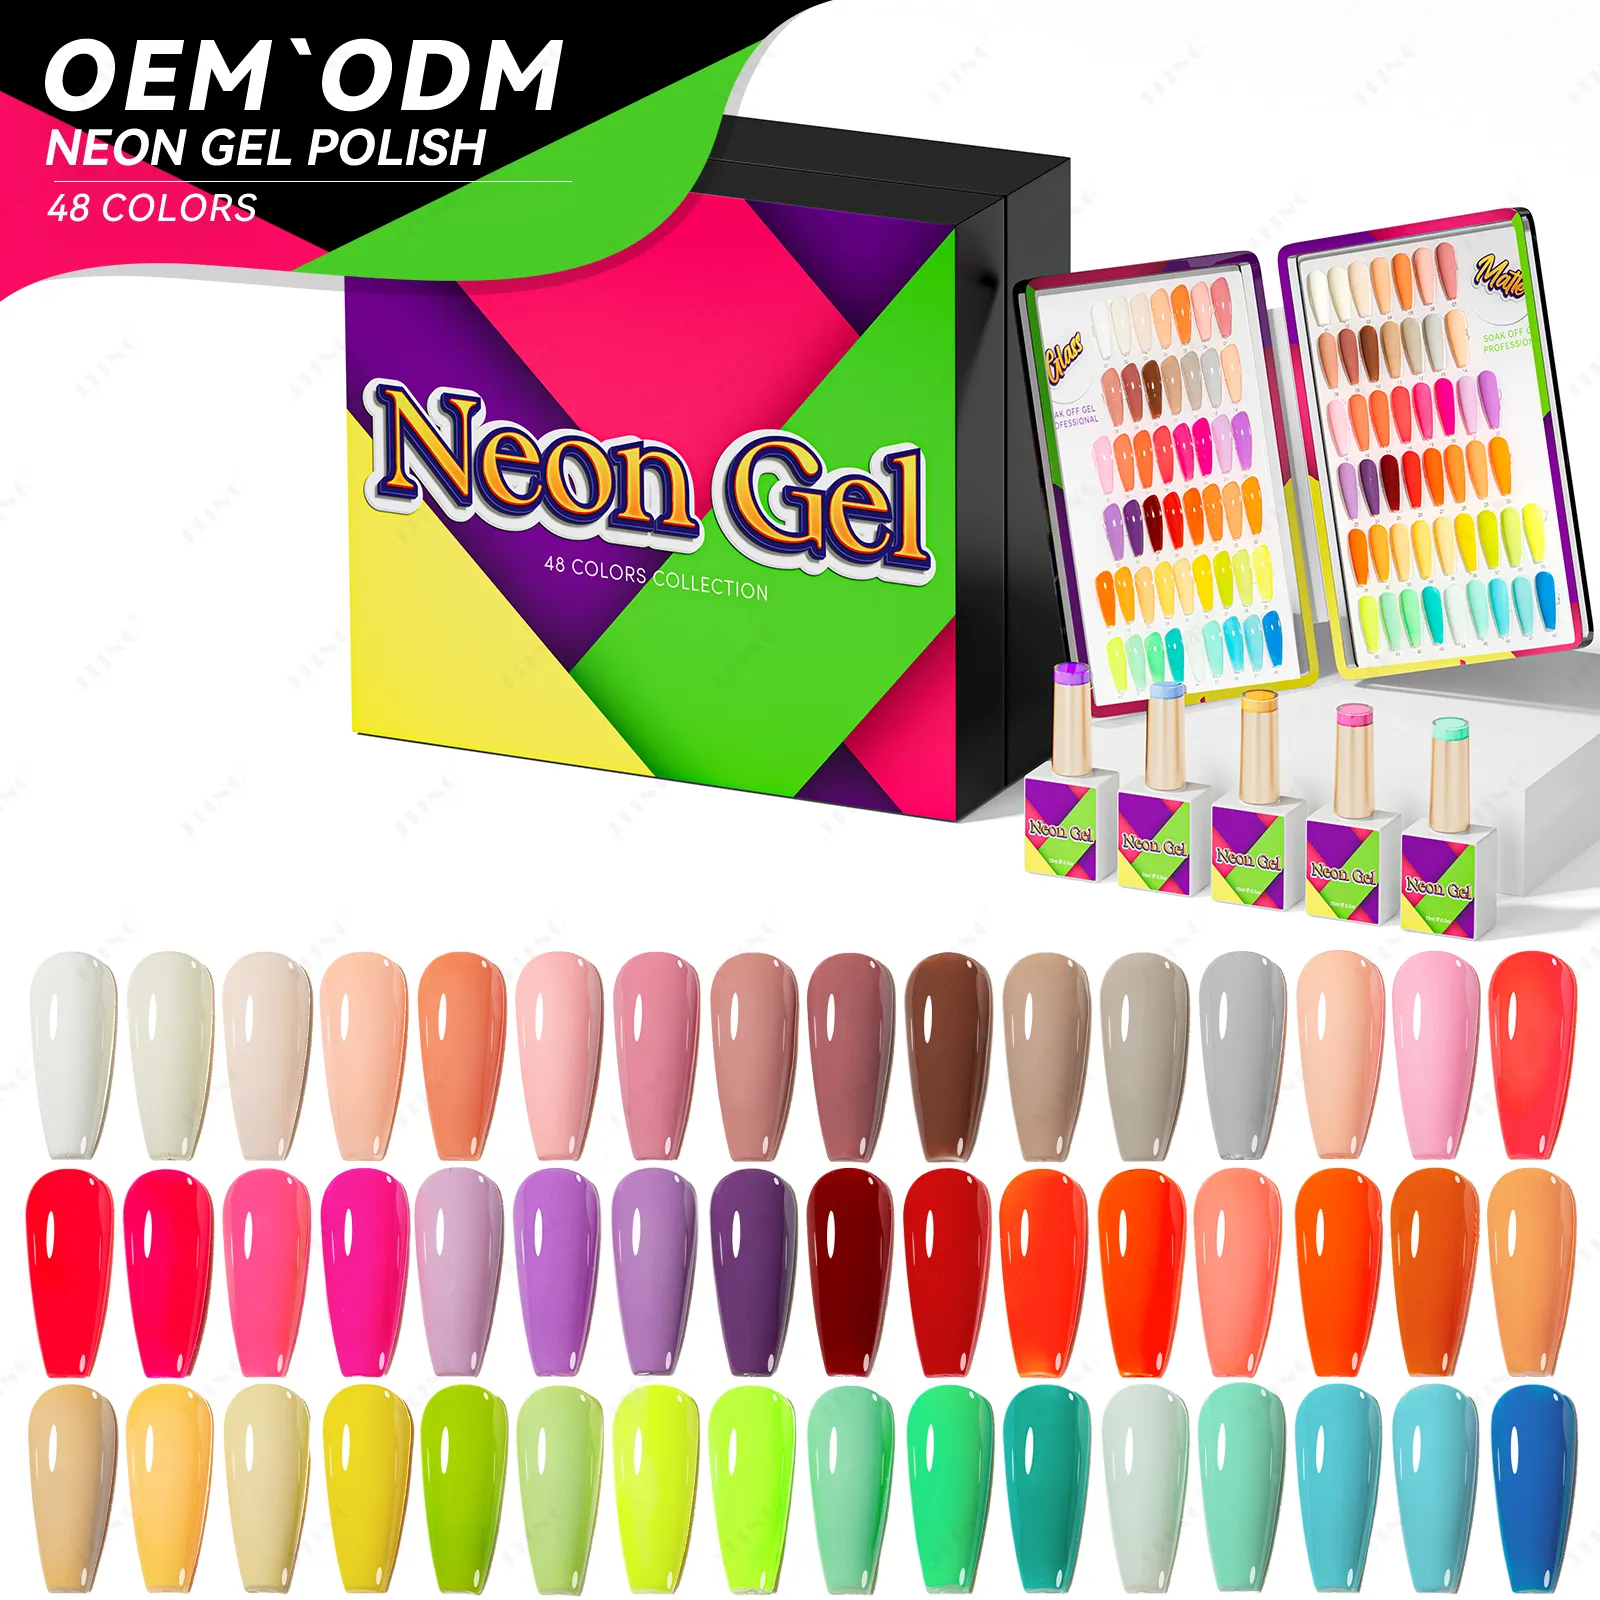 JTING pigmen tinggi 48 warna Neon gel kuku koleksi gratis desain sampel OEM perlengkapan kuku kustom Label pribadi...